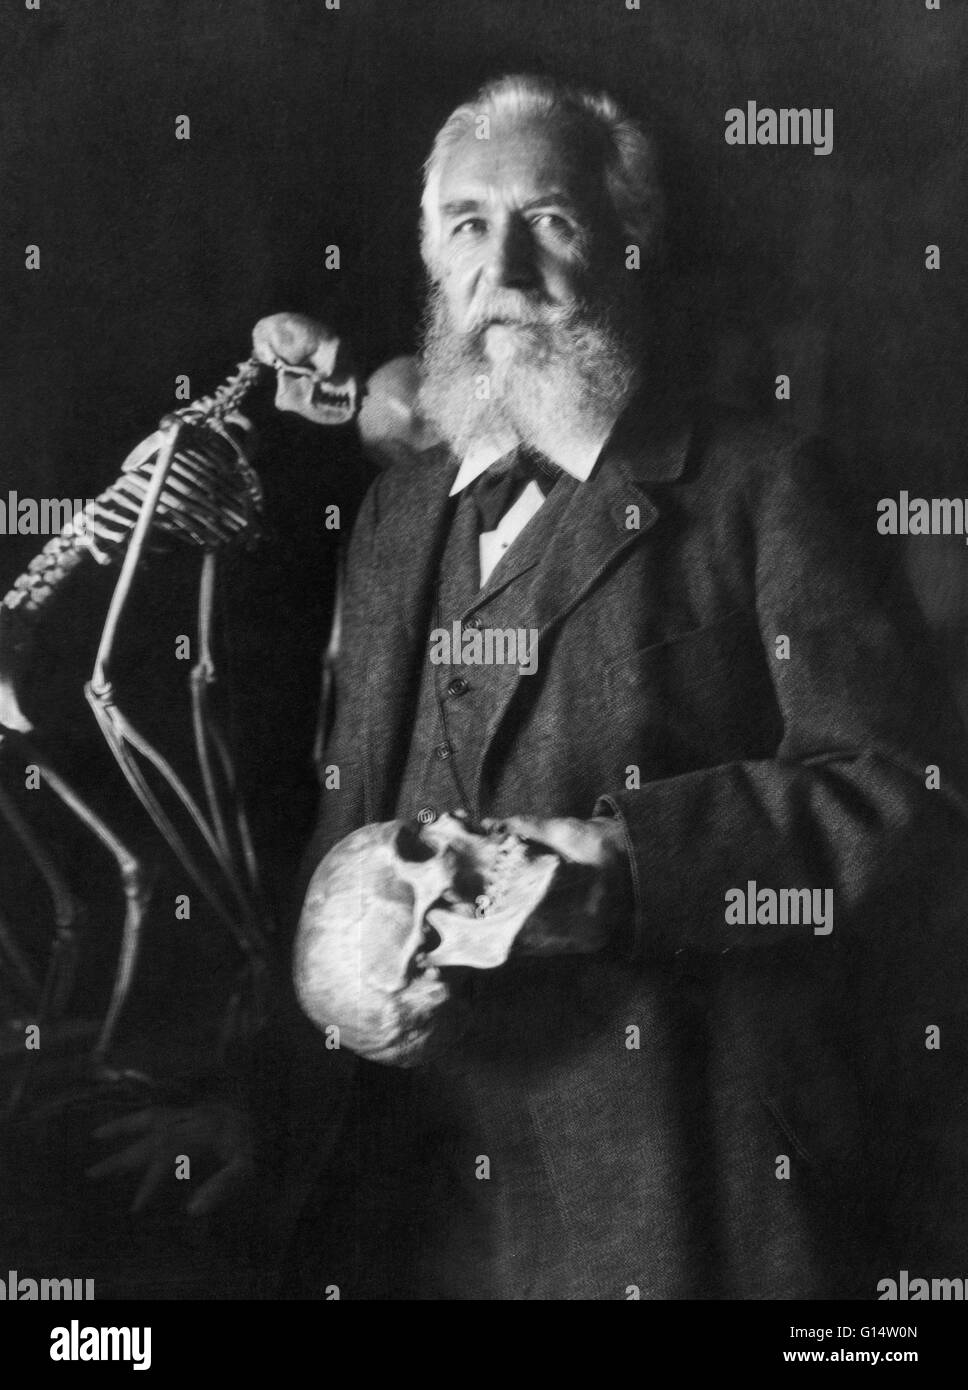 Der deutsche Naturforscher Ernst Haeckel (1834-1919) im Jahre 1906. Foto von Nicola Perscheid. Ernst Heinrich Philipp August Haeckel (1834-1919) war ein bedeutender deutscher Biologe, Naturforscher, Philosoph, Arzt, Professor und Künstler entdeckt, beschreiben Stockfoto